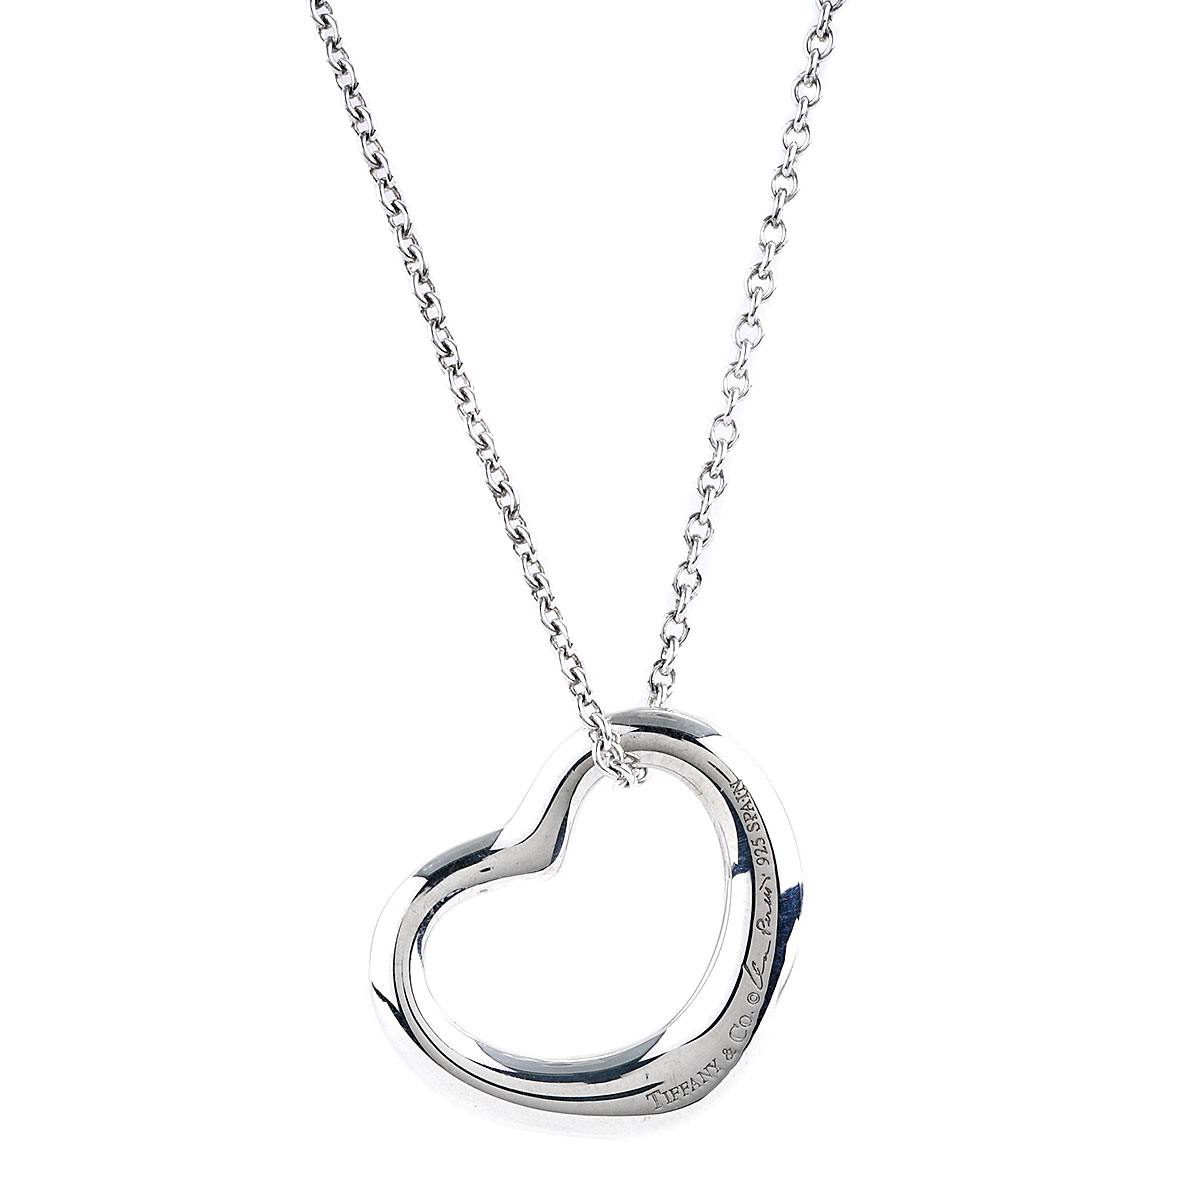 Tiffany & Co. Elsa Peretti Open Heart Necklace in Silver Small